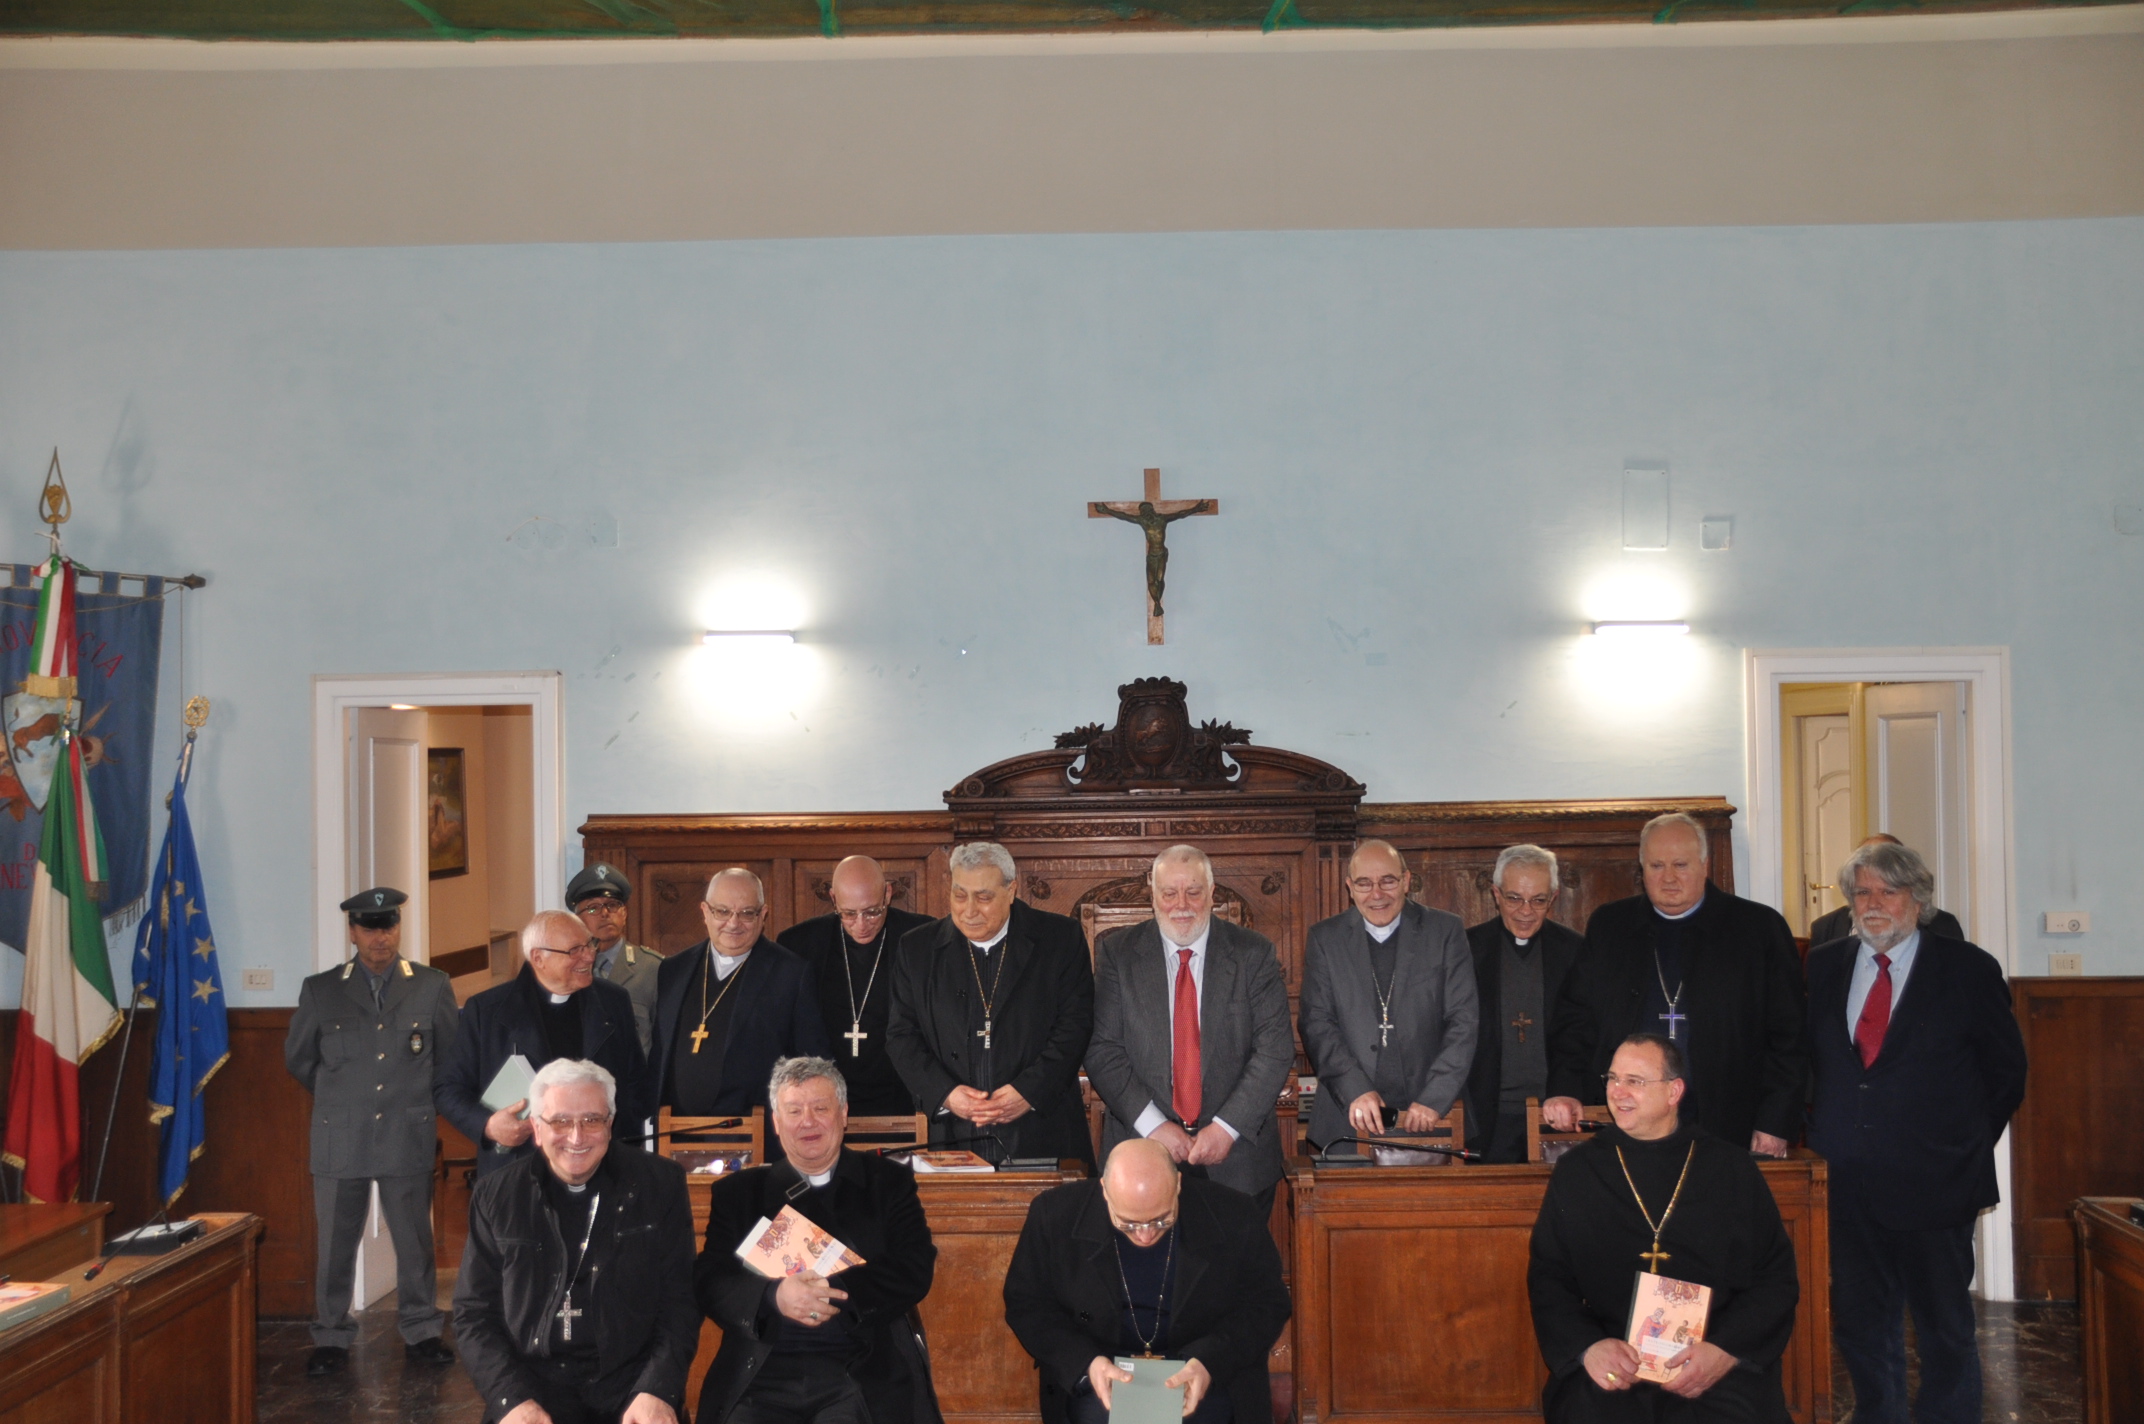 Benevento| La Conferenza Episcopale della Campania in visita alla Rocca dei Rettori